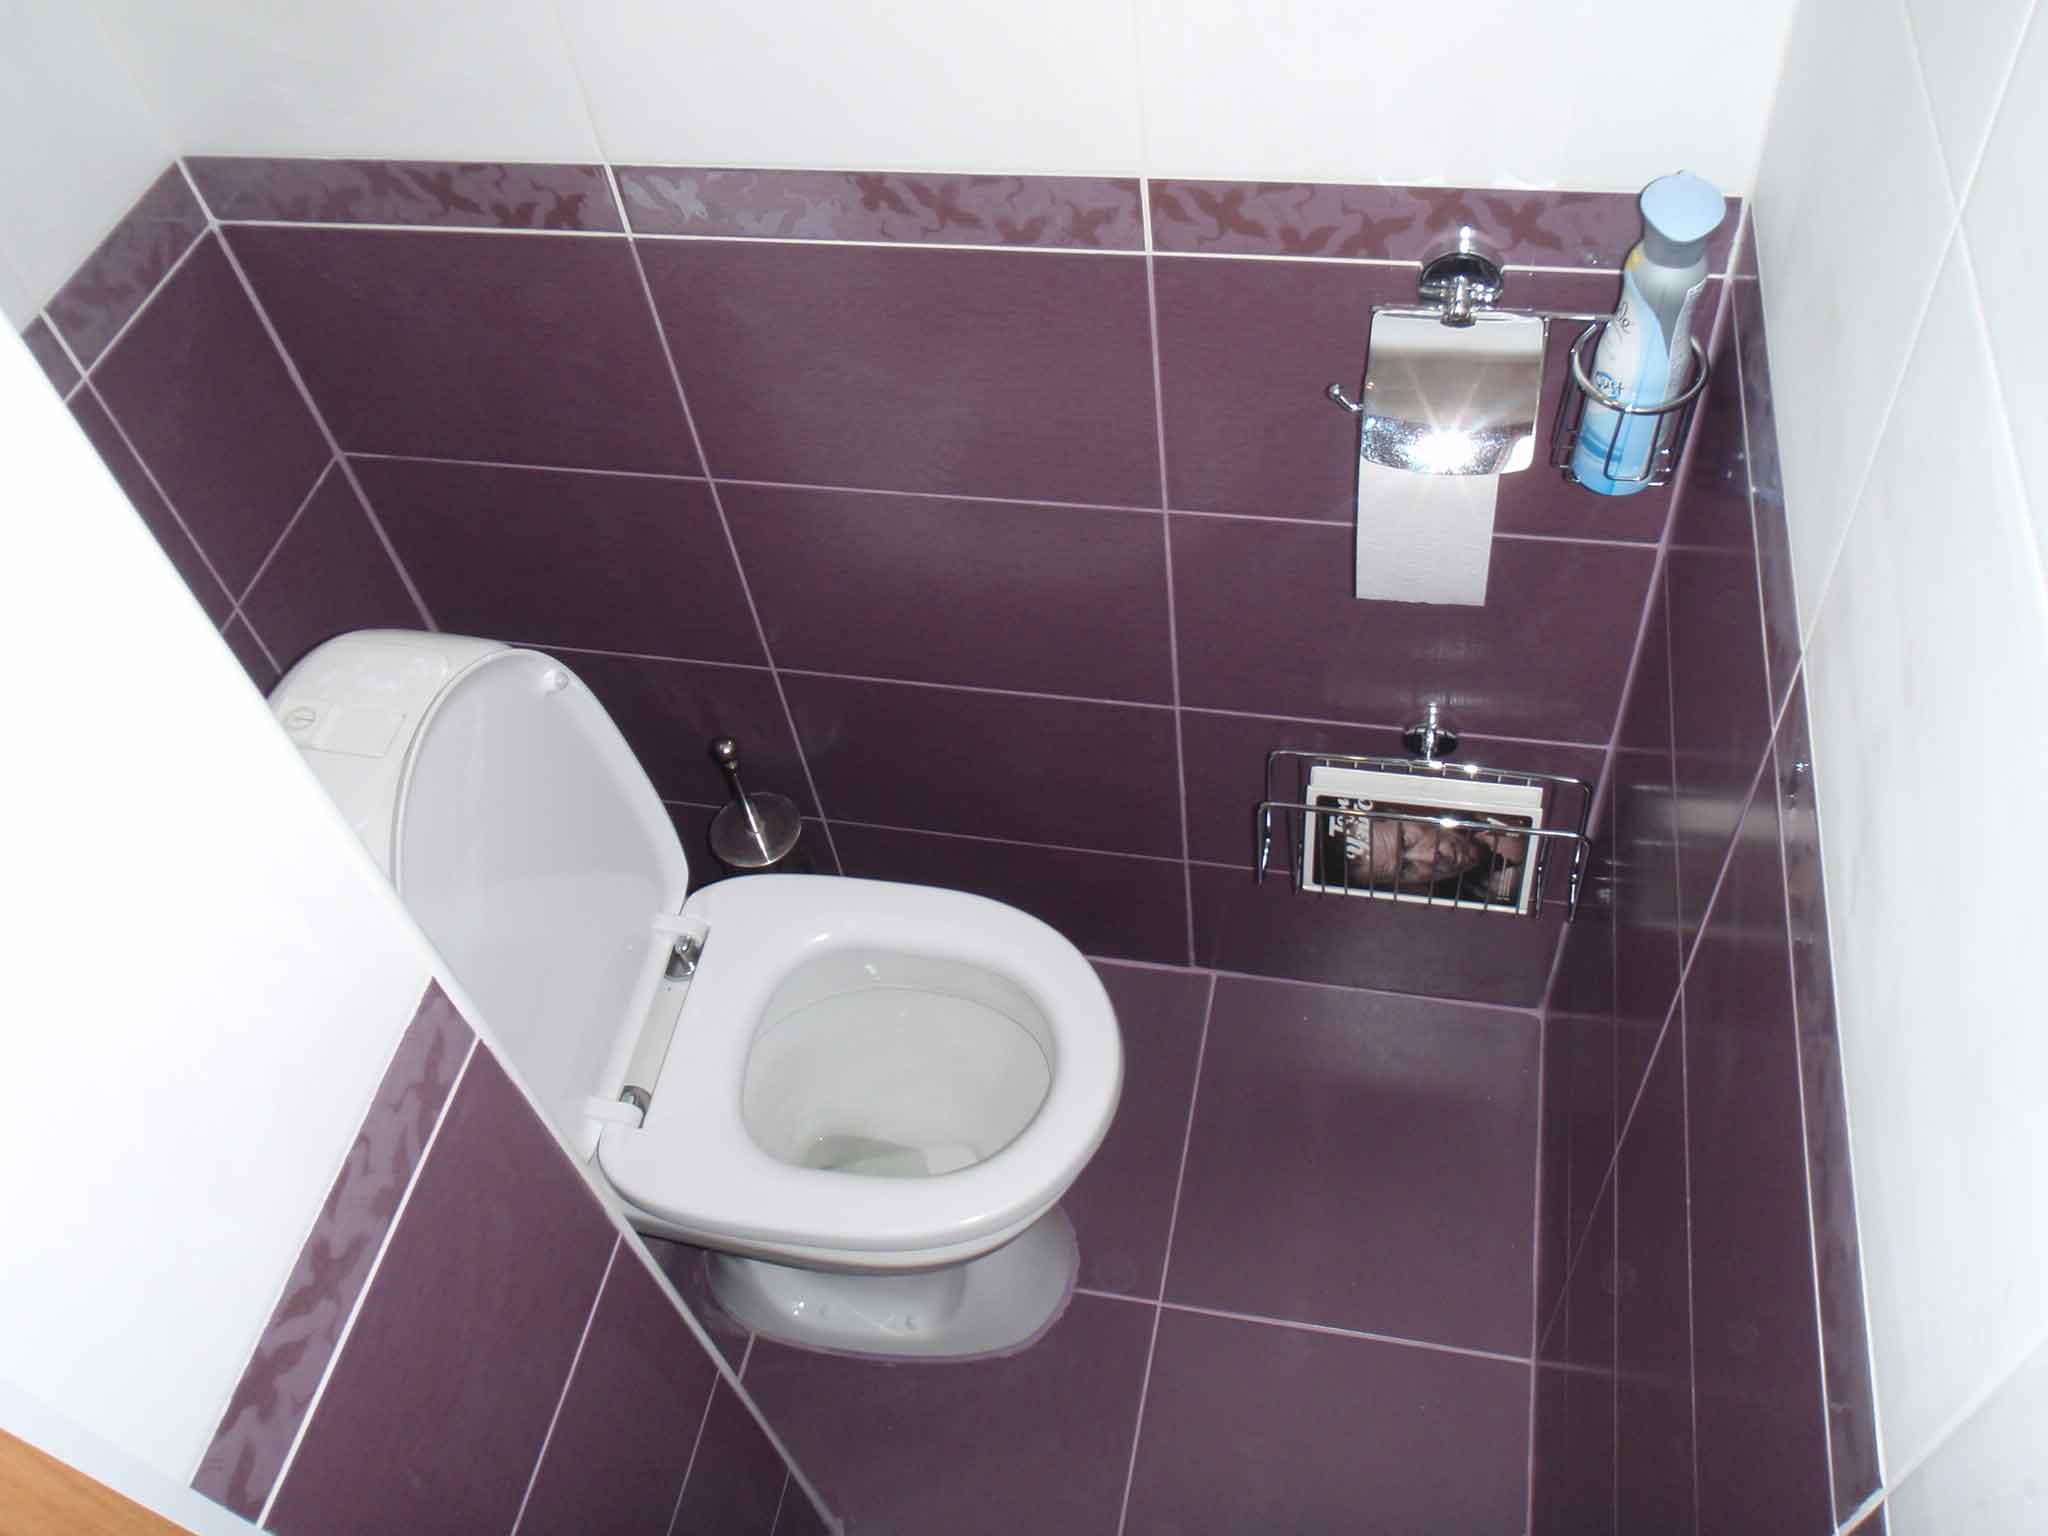 Отделка туалета плиткой, полезные советы, возможные практичные идеи для применения в вашем туалете